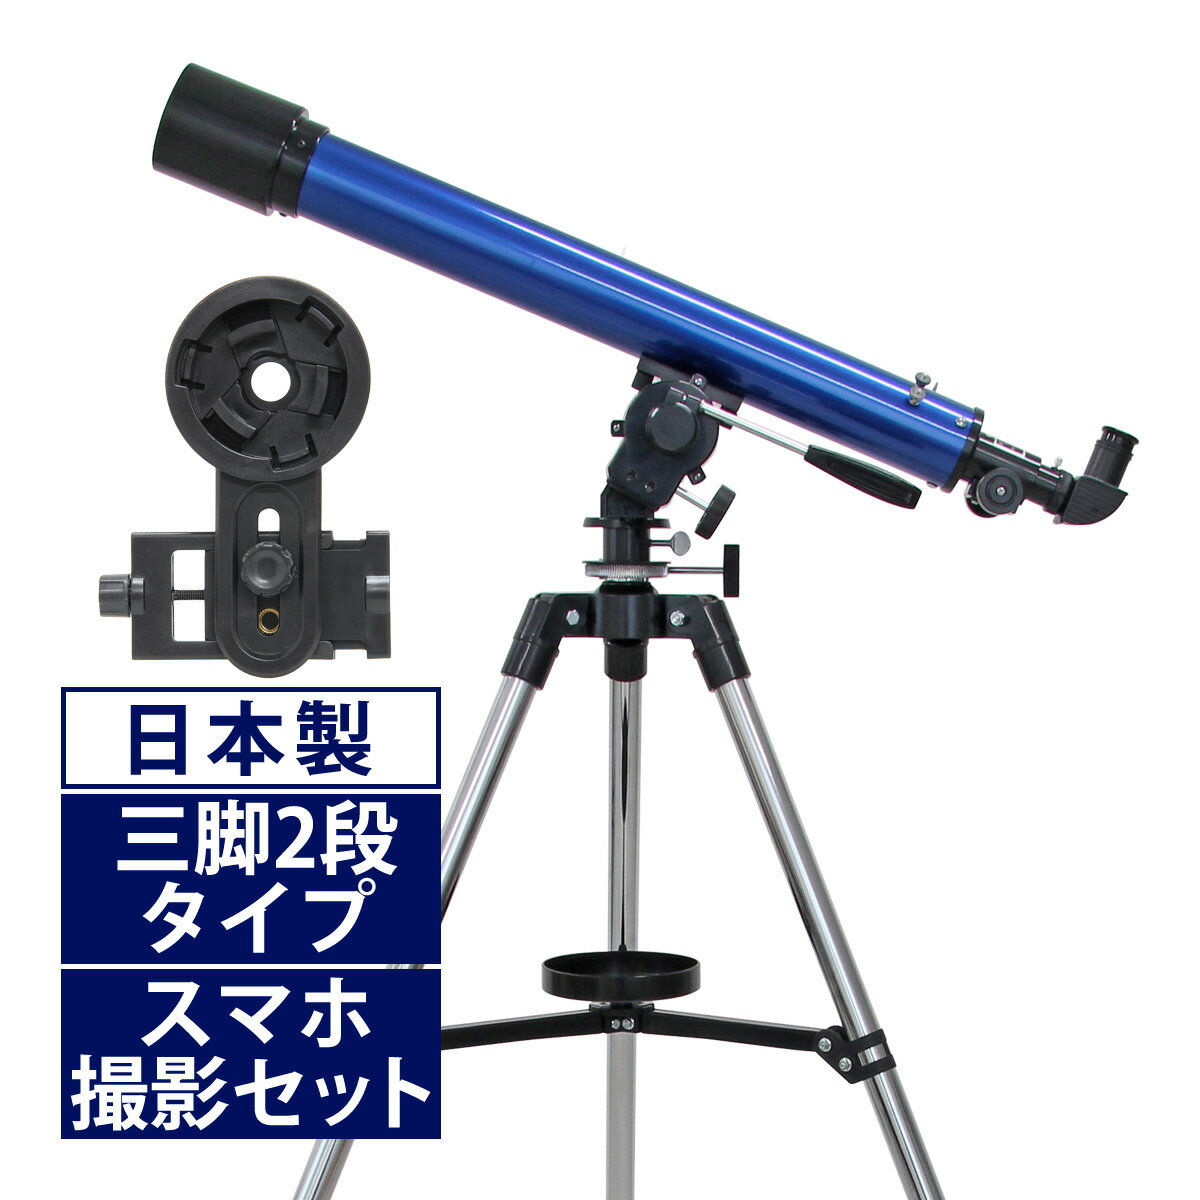 天体望遠鏡 スマホ 撮影 初心者 リゲルハイ60D 日本製 天体望遠鏡セット 望遠鏡 天体 携帯 子供 小学生 ブルー 天体ガイドブック付き 子供用に最適 初心者に向け本気で作られた 屈折式 スマー…